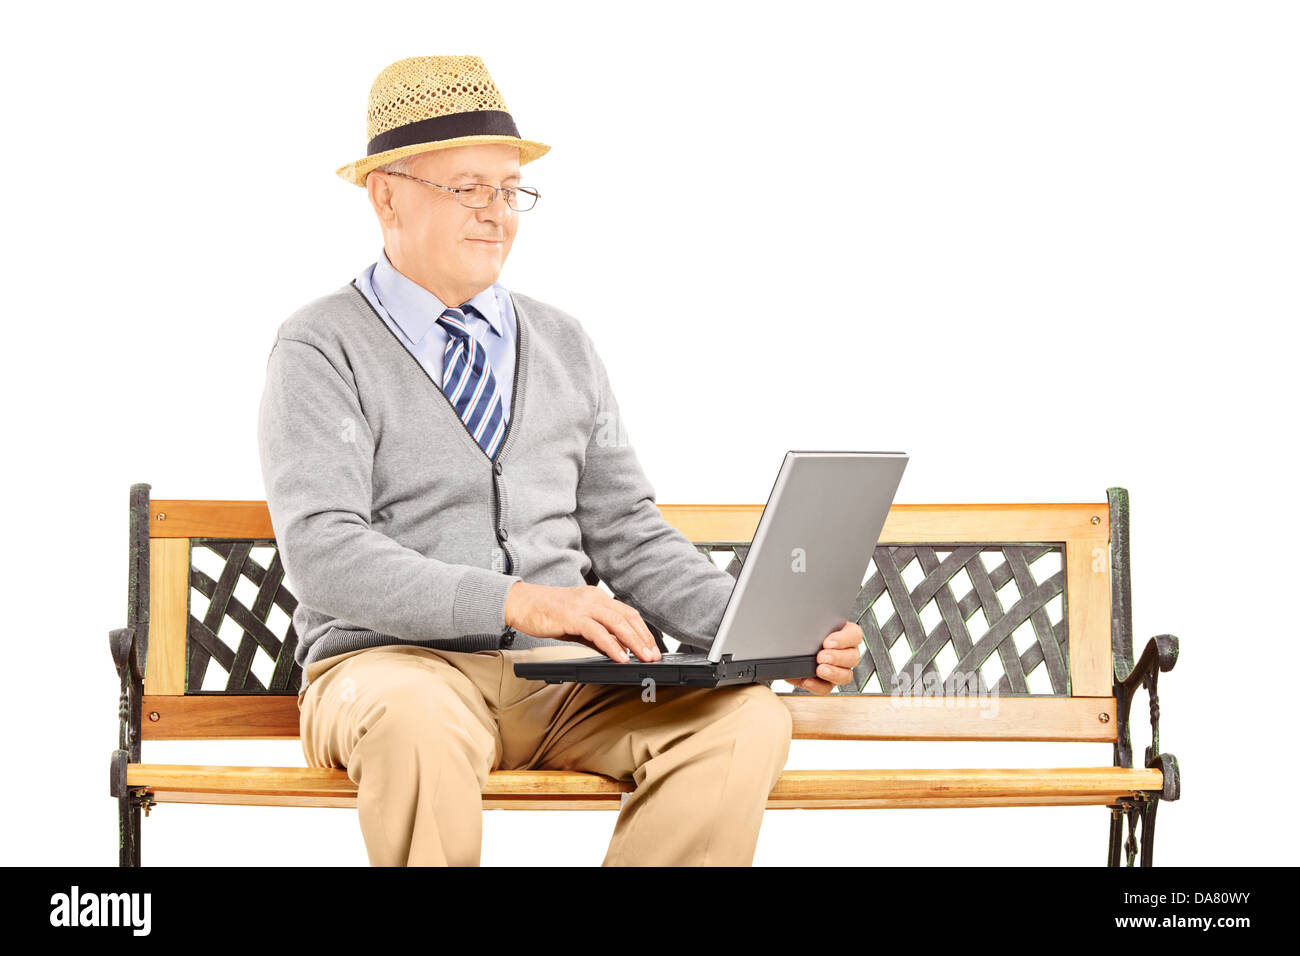 Hauts homme assis sur un banc en bois et de travail sur un ordinateur portable Banque D'Images